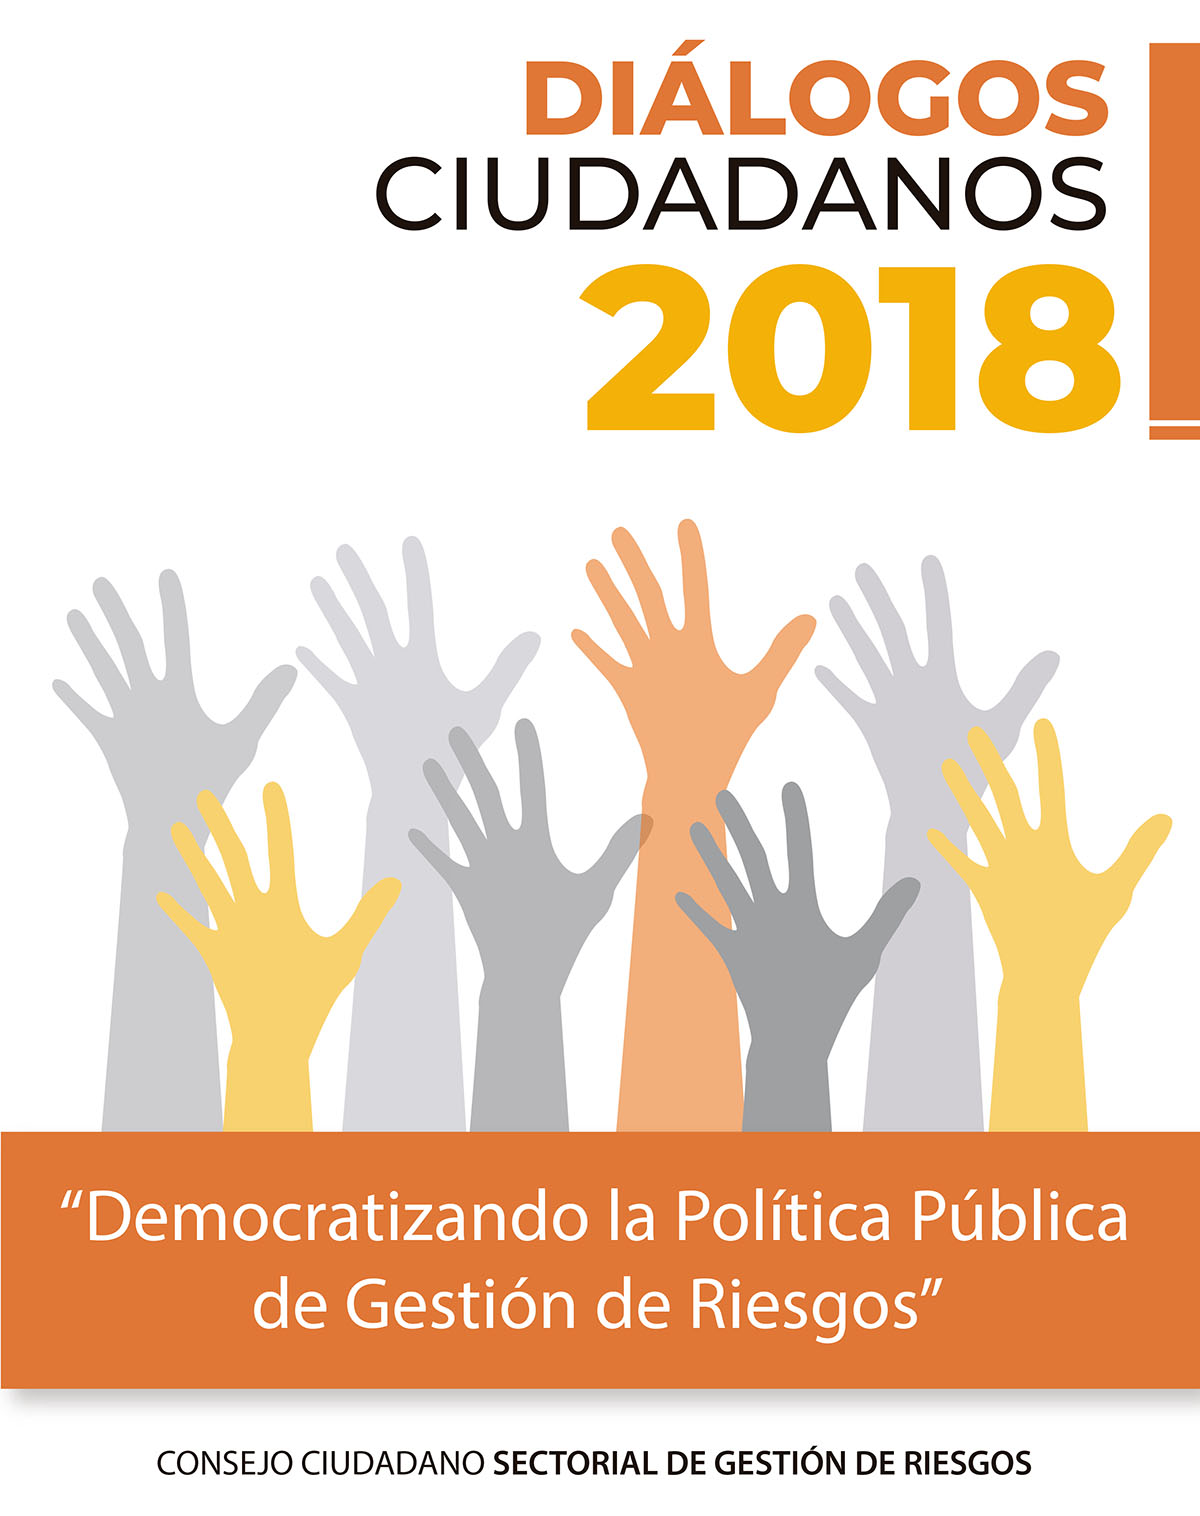 Diálogos ciudadanos 2018: democratizando la política pública de gestión de riesgos